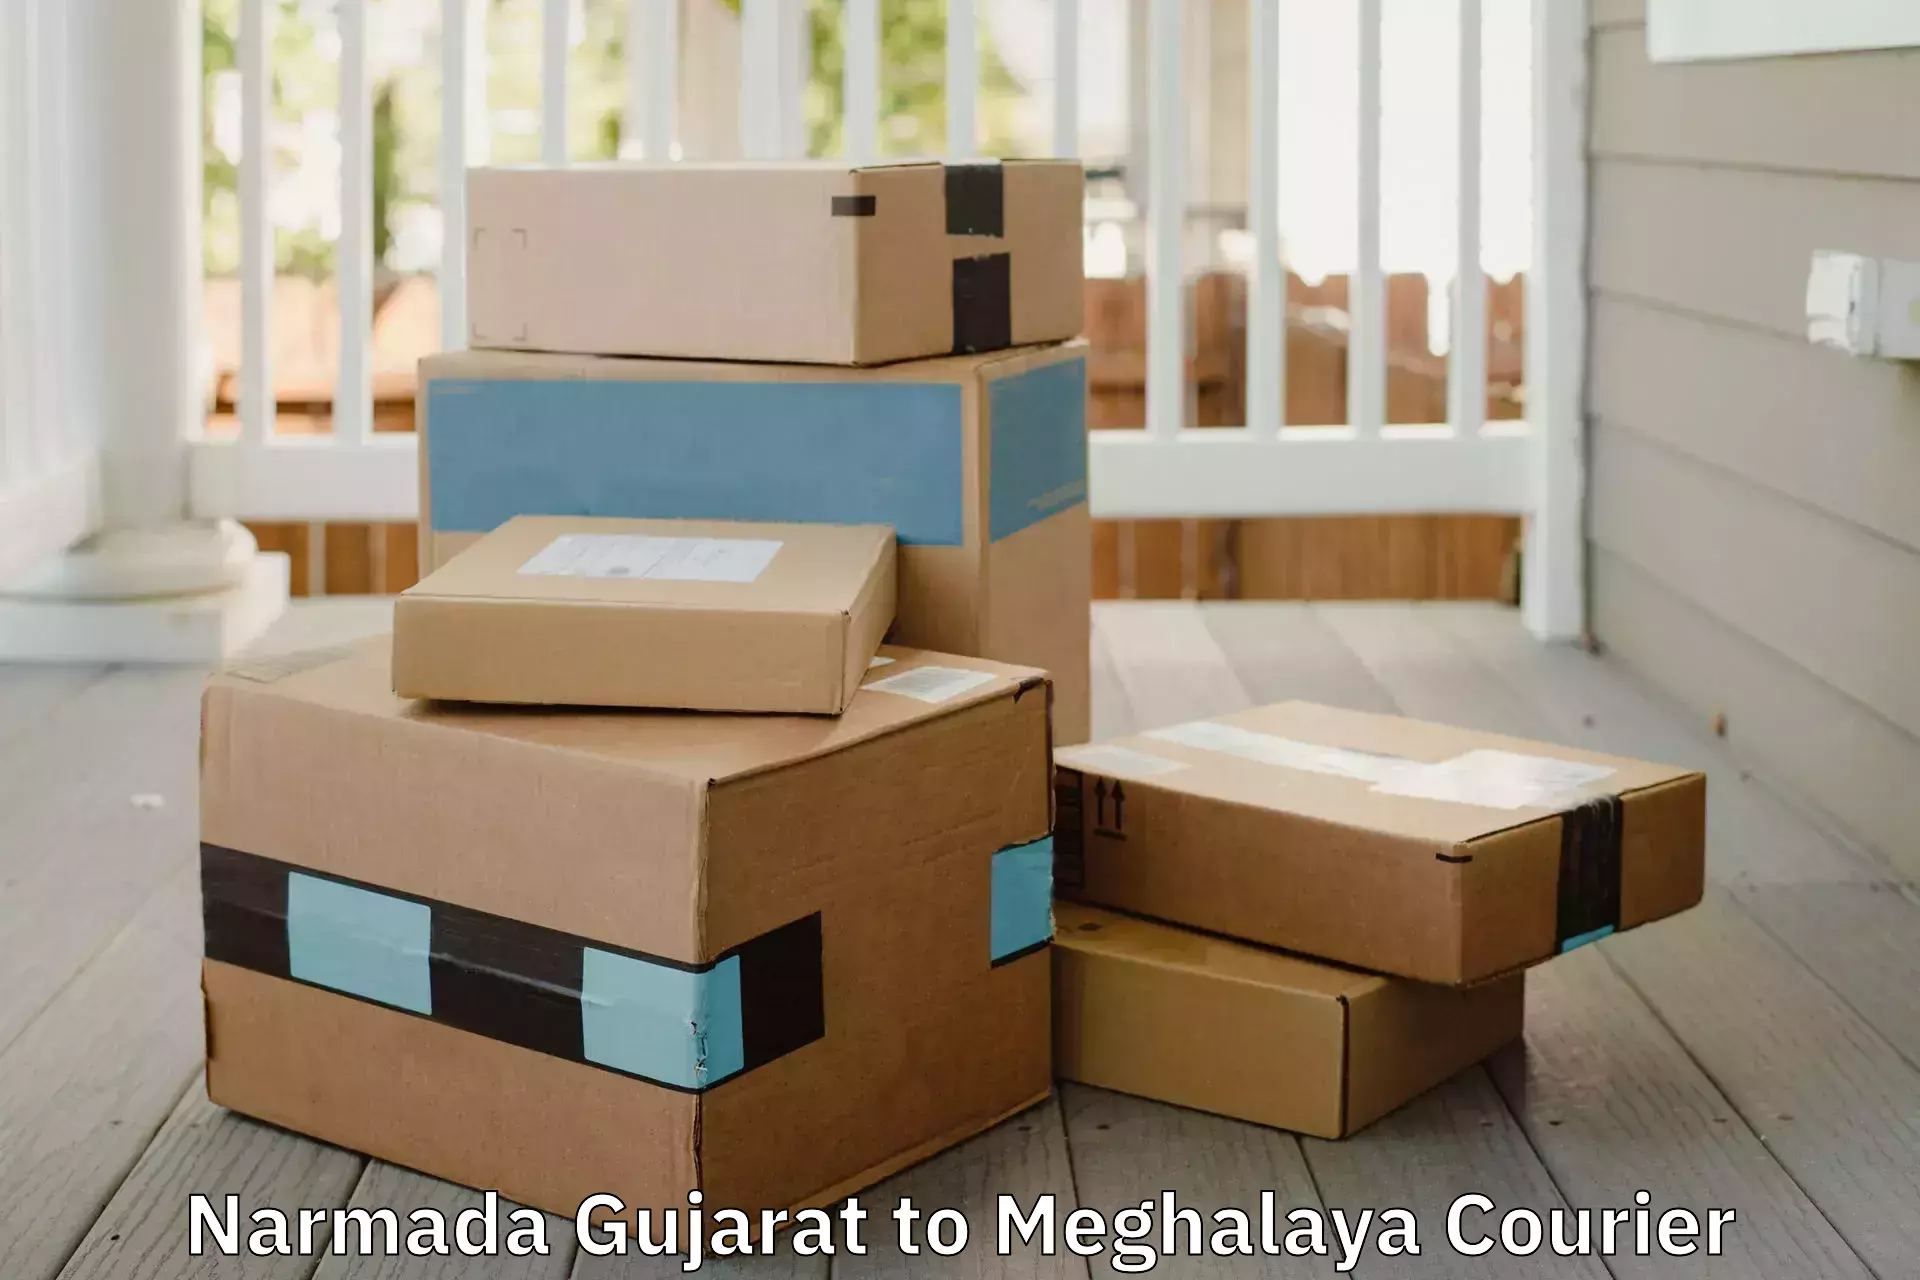 Specialized moving company Narmada Gujarat to Shillong